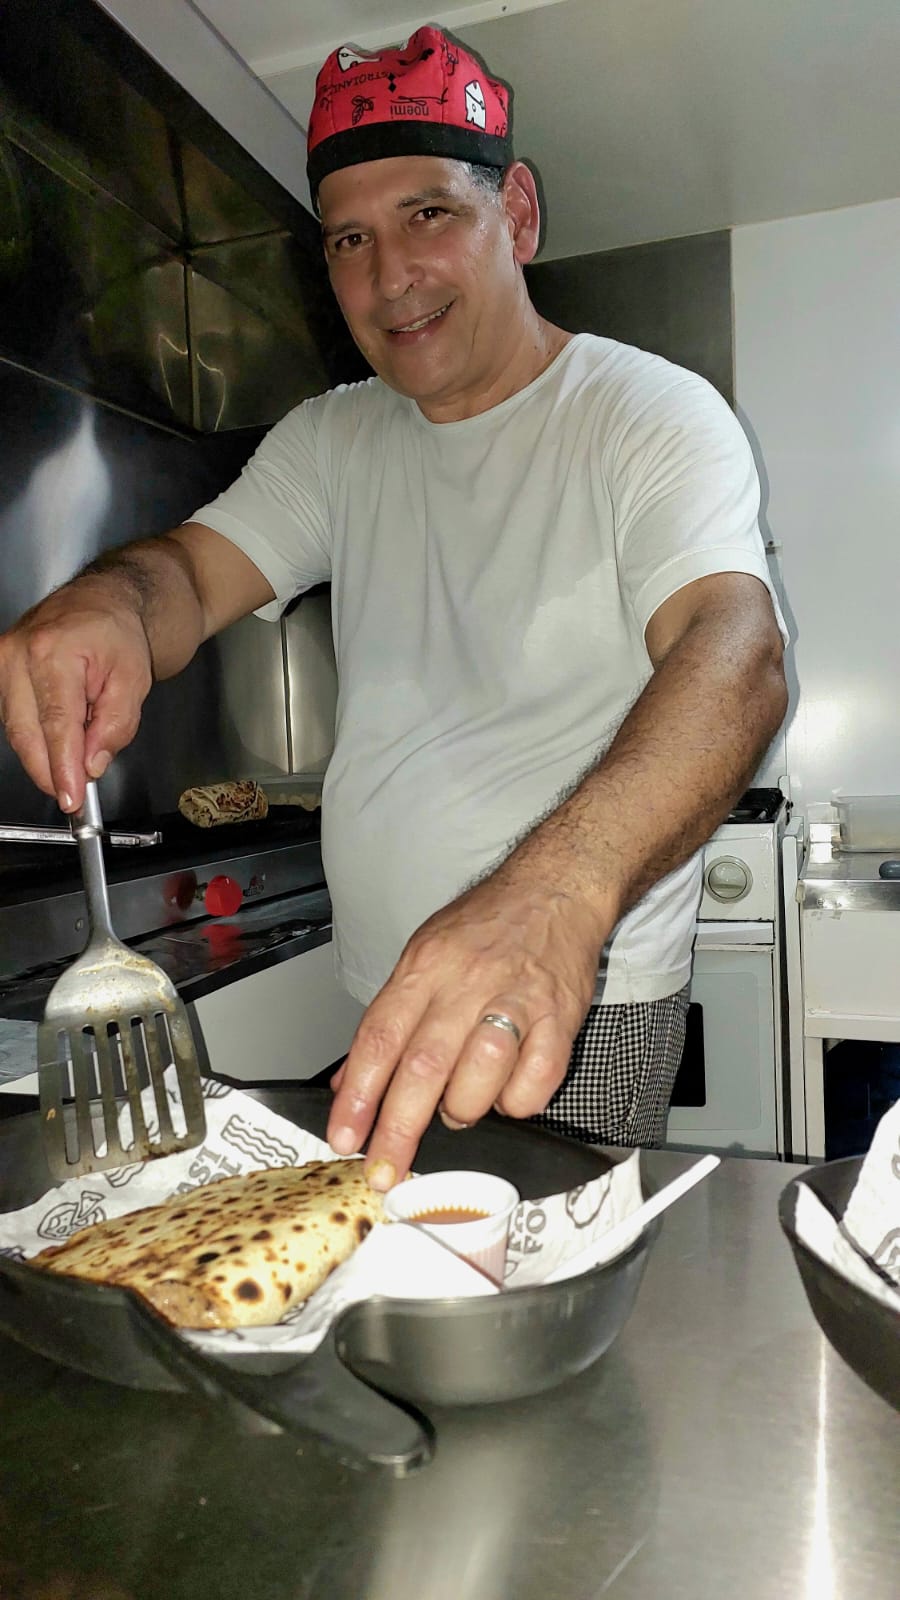 El Tio Burrito, trailer na Asa Norte atrai gourmets para combinação latina - Liana Sabo - 